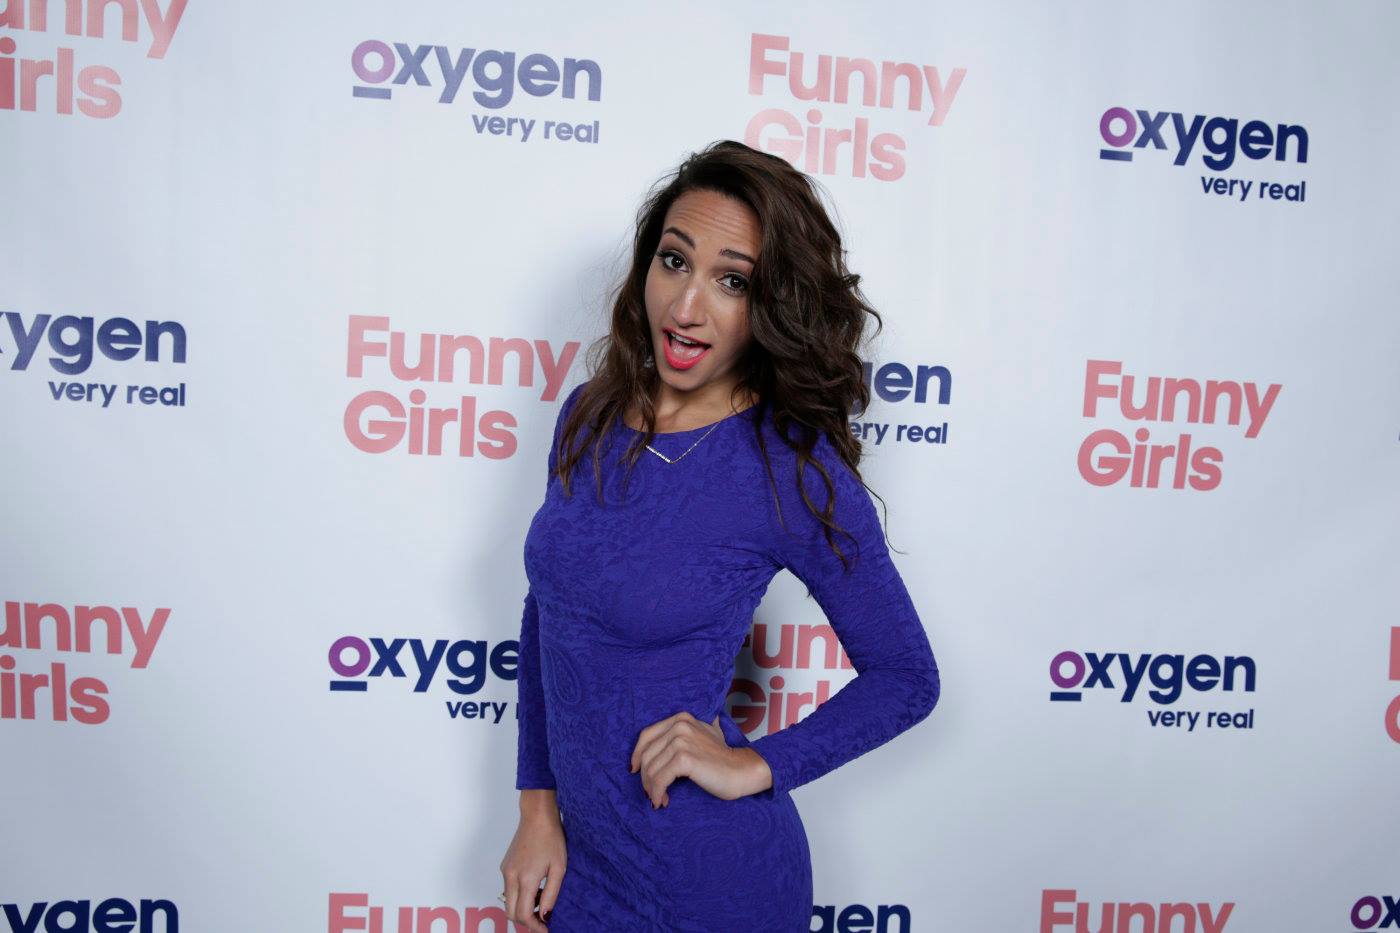 Oxygen Funny Girls Premiere